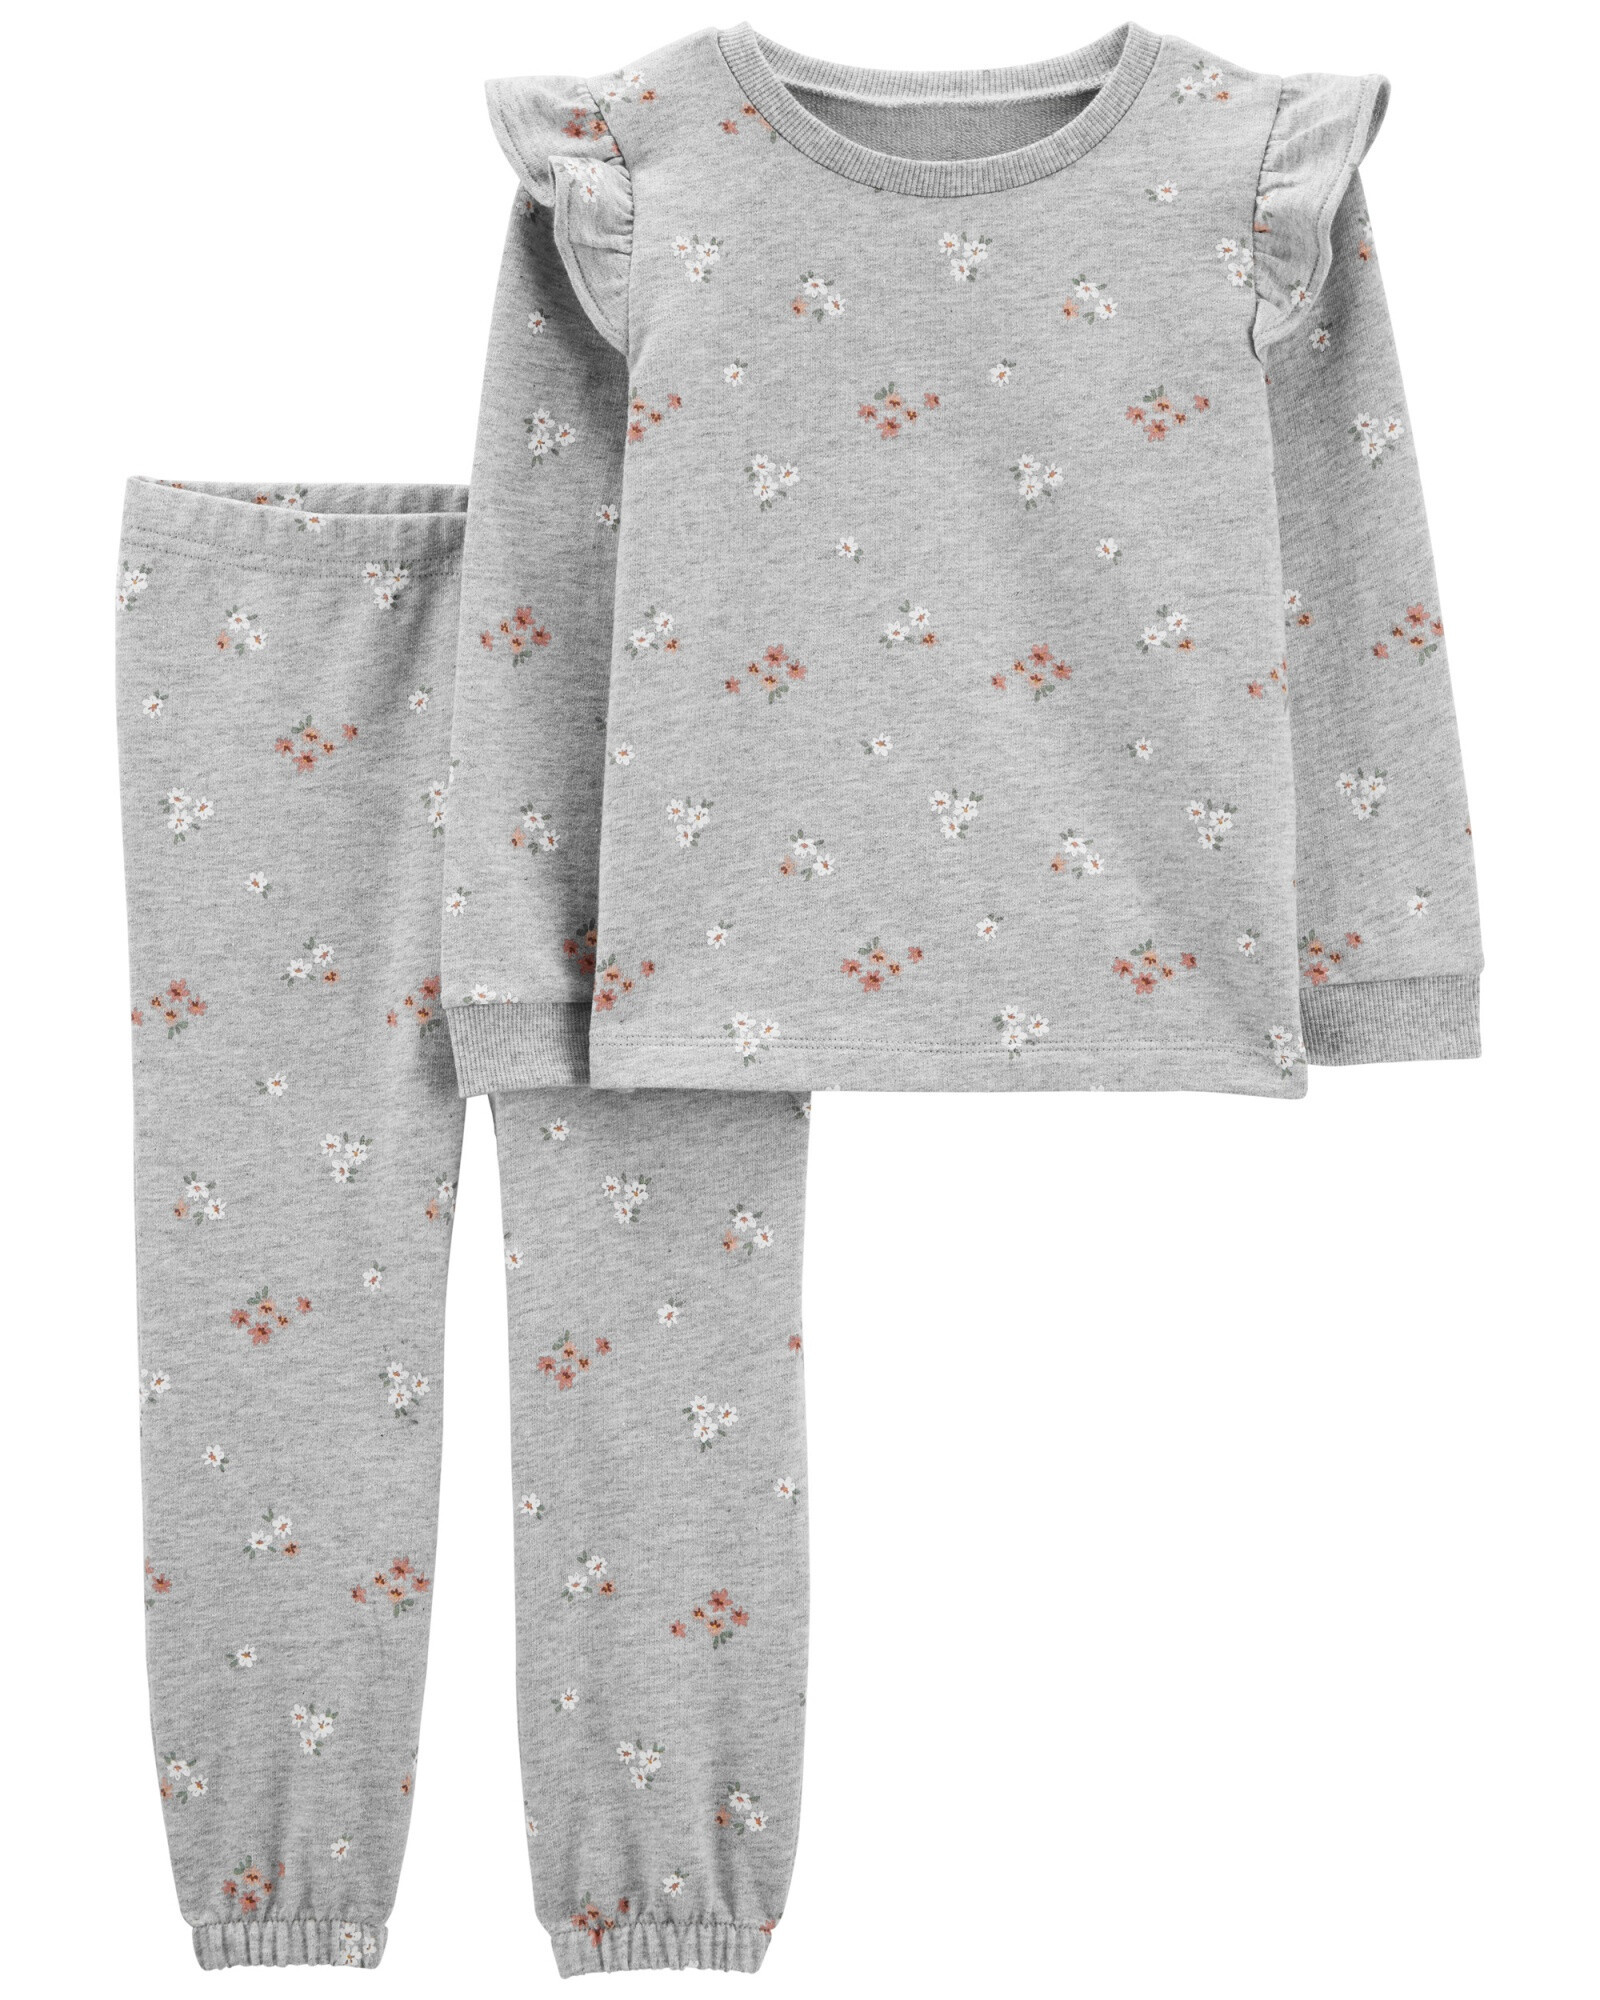 Set dos piezas pantalón y blusa de algodón, diseño floral Sin color